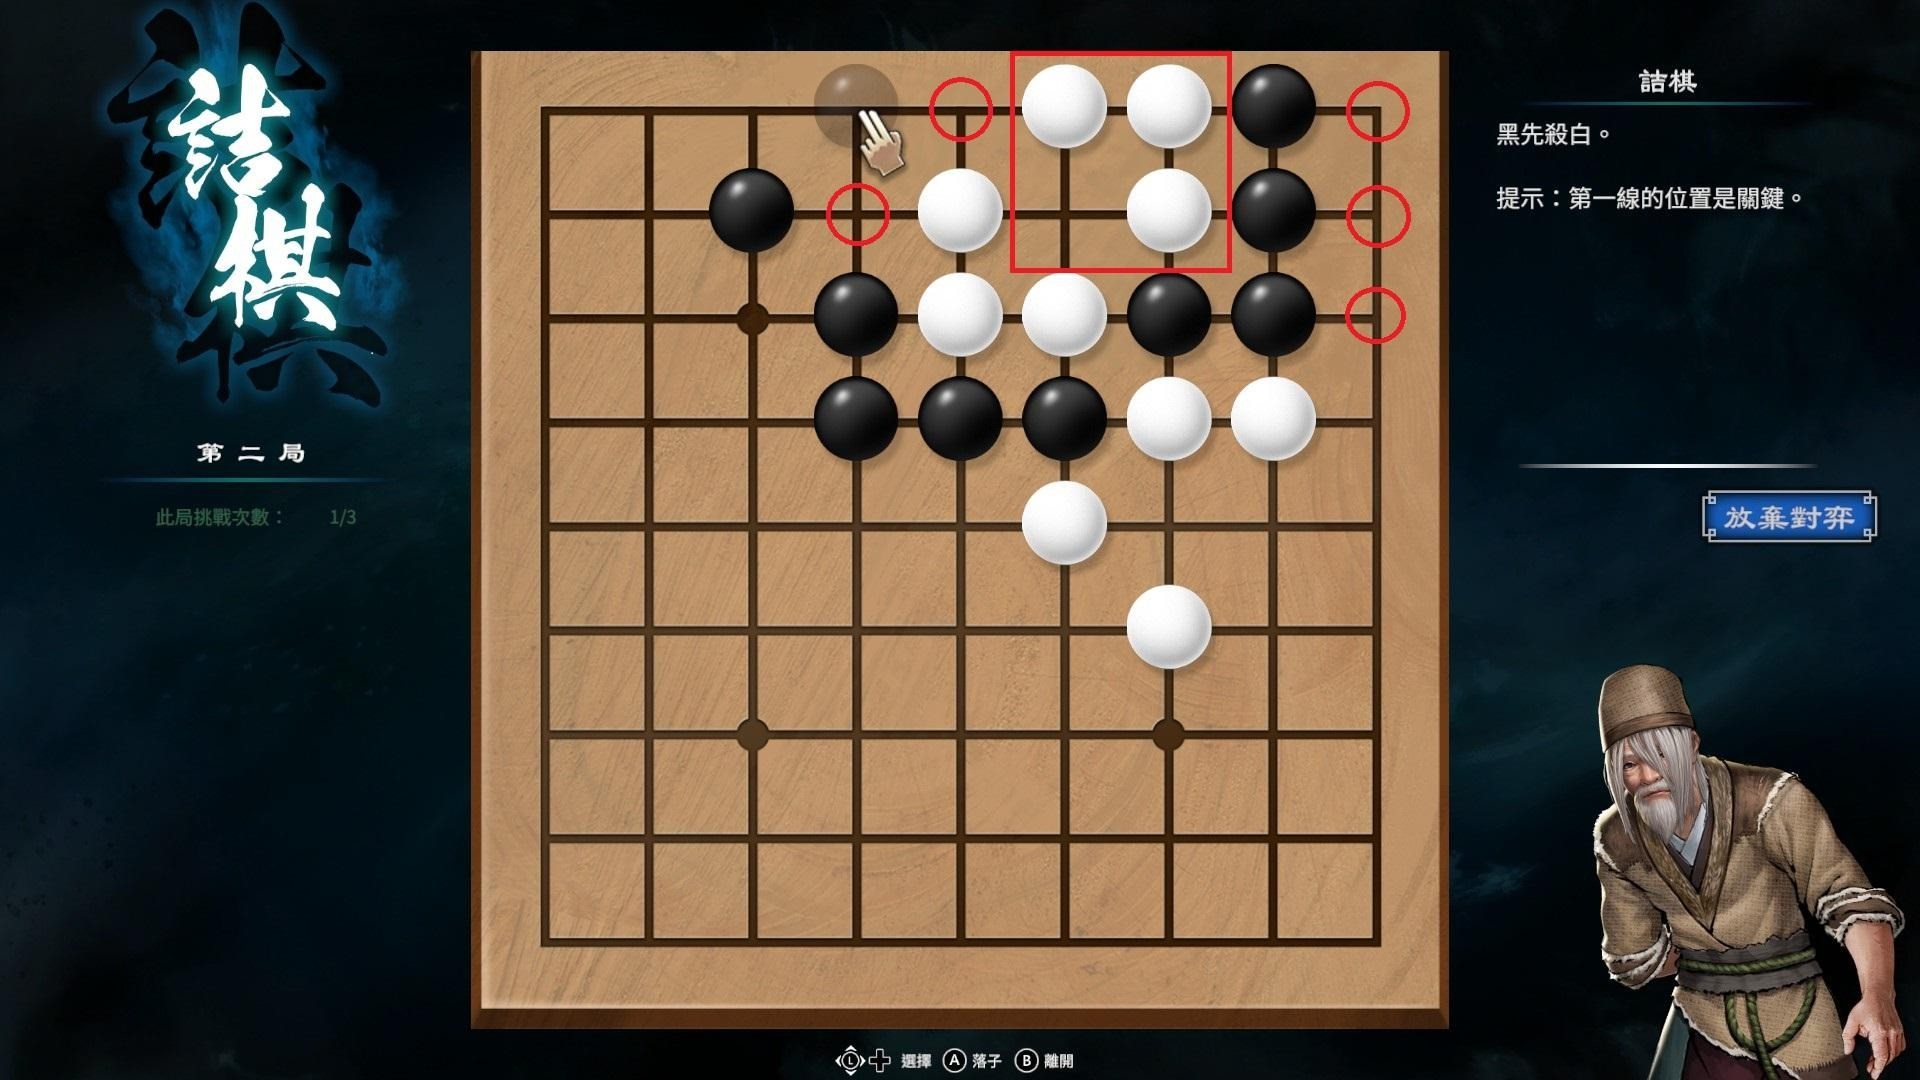 《天命奇御2》围棋基本概念与棋型解法介绍 - 第3张